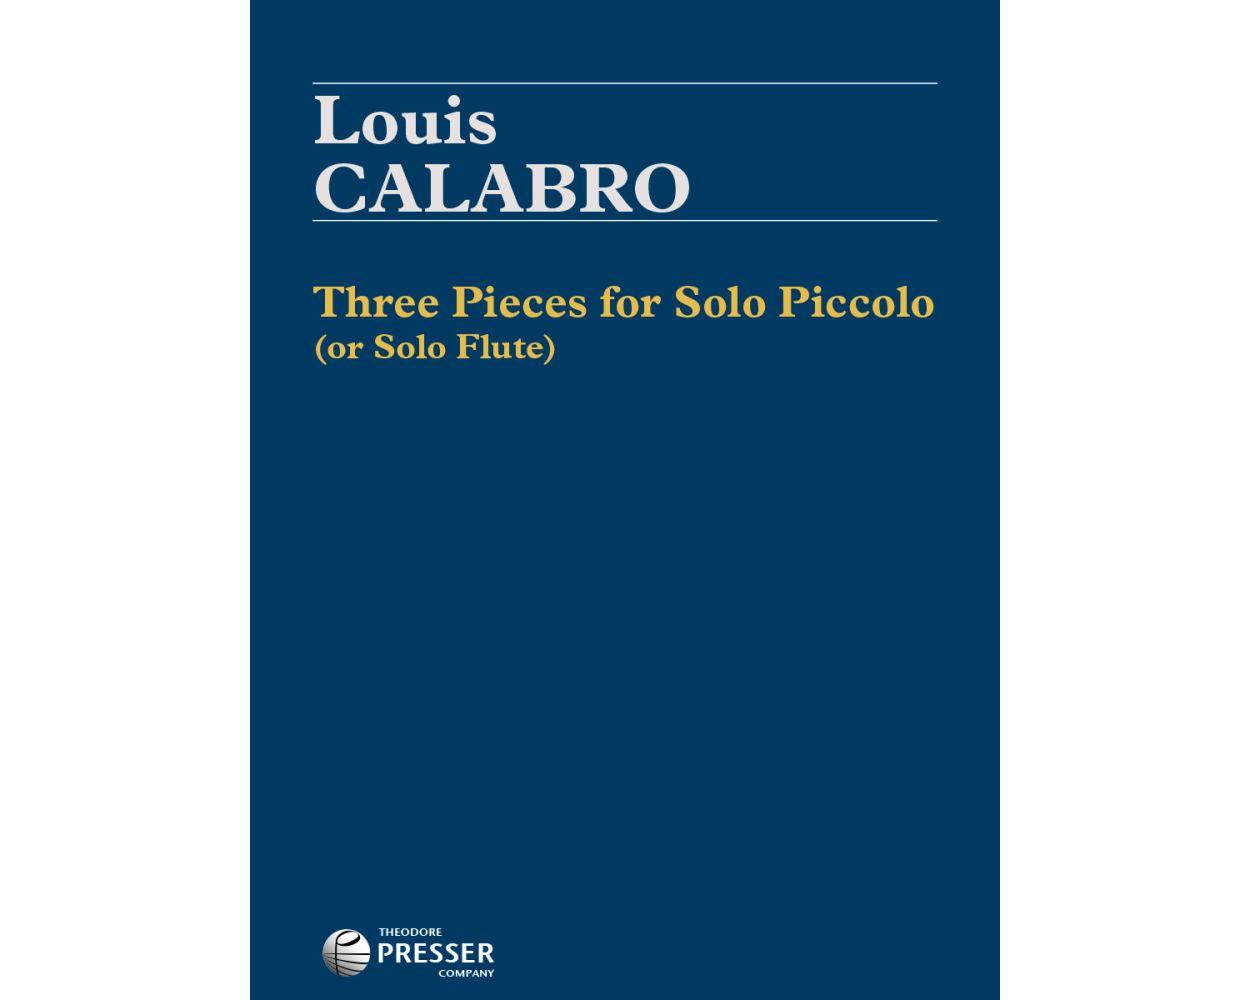 Three Pieces Fo Solo Piccolo - Louis Calabro | Suono Flauti